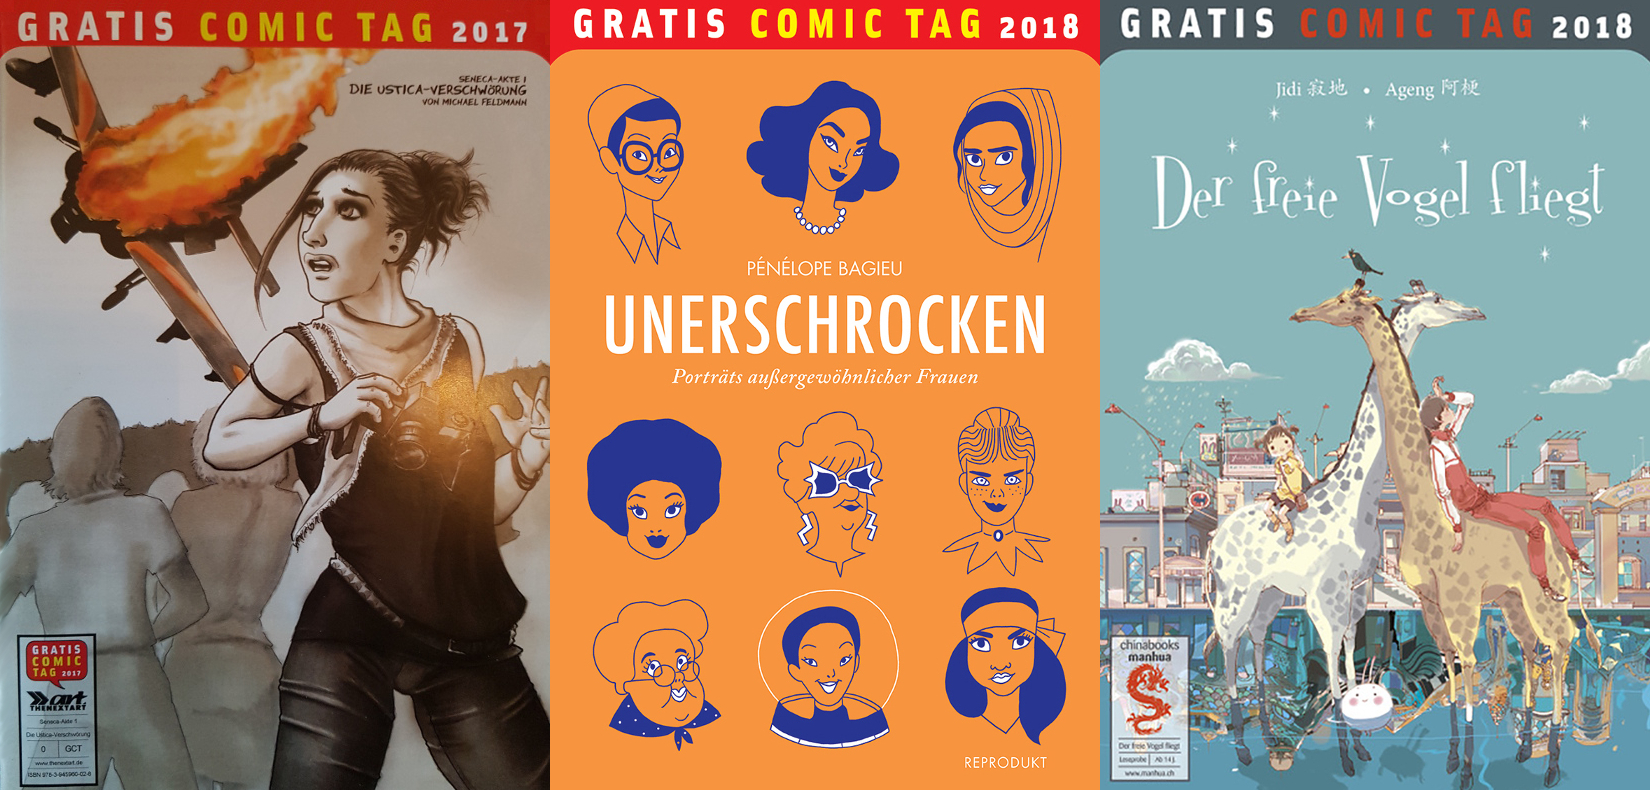 Der freie Vogel fliegt Vom Gratis Comic Tag 2018 Comic deutsch